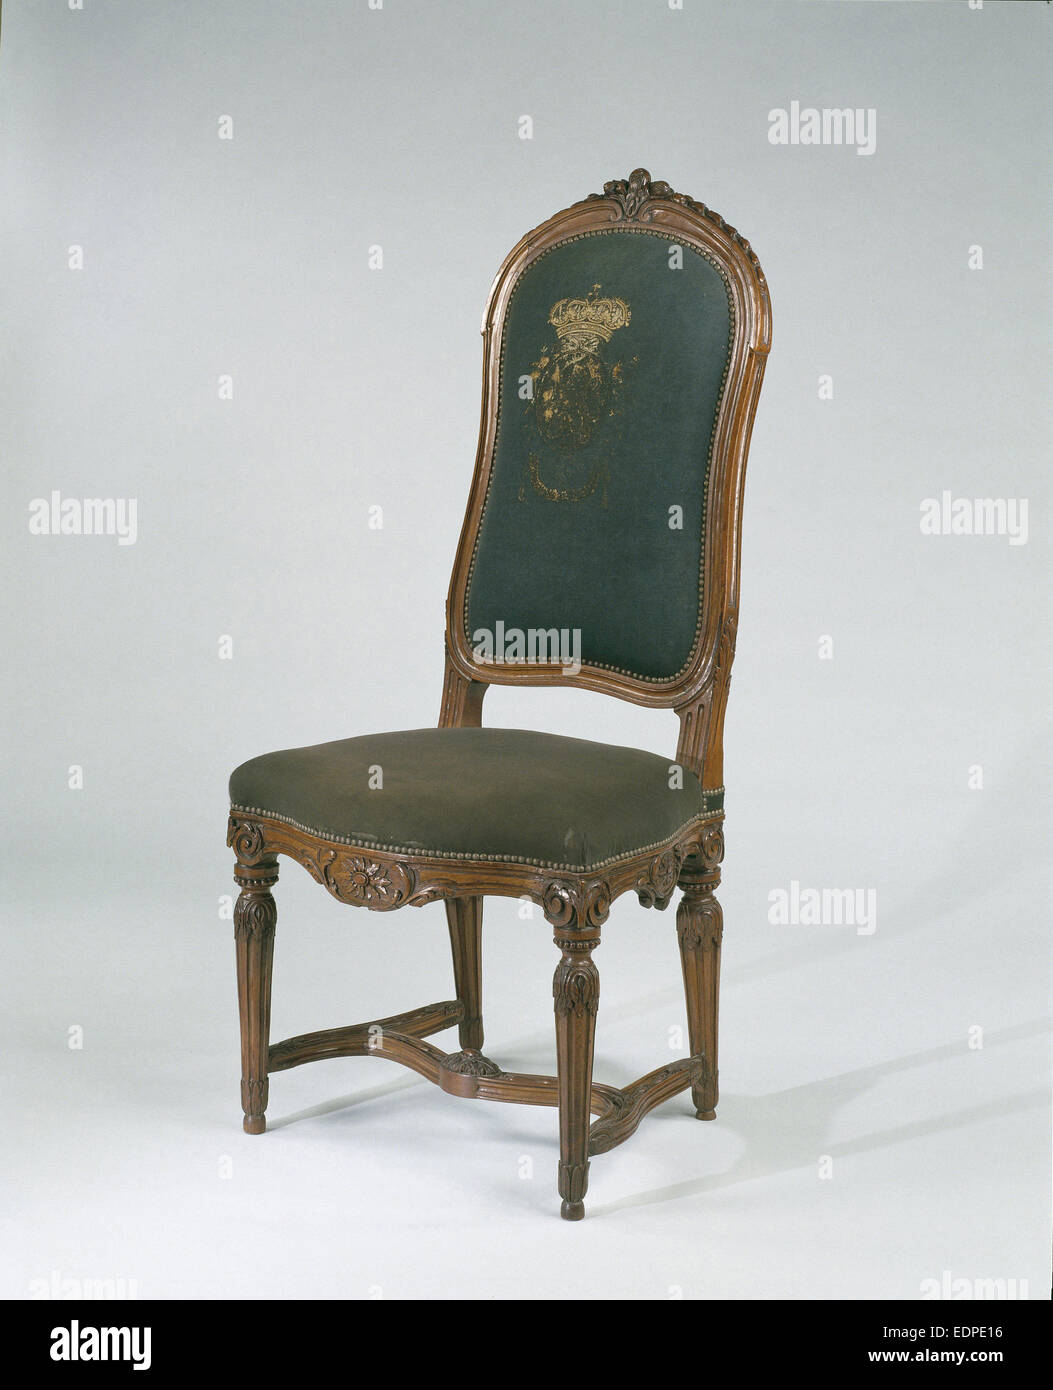 Bois de hêtre chaise avec pieds cannelés et sculpté, recouvert de tissu bleu-vert avec un écusson brodé à l'arrière Banque D'Images